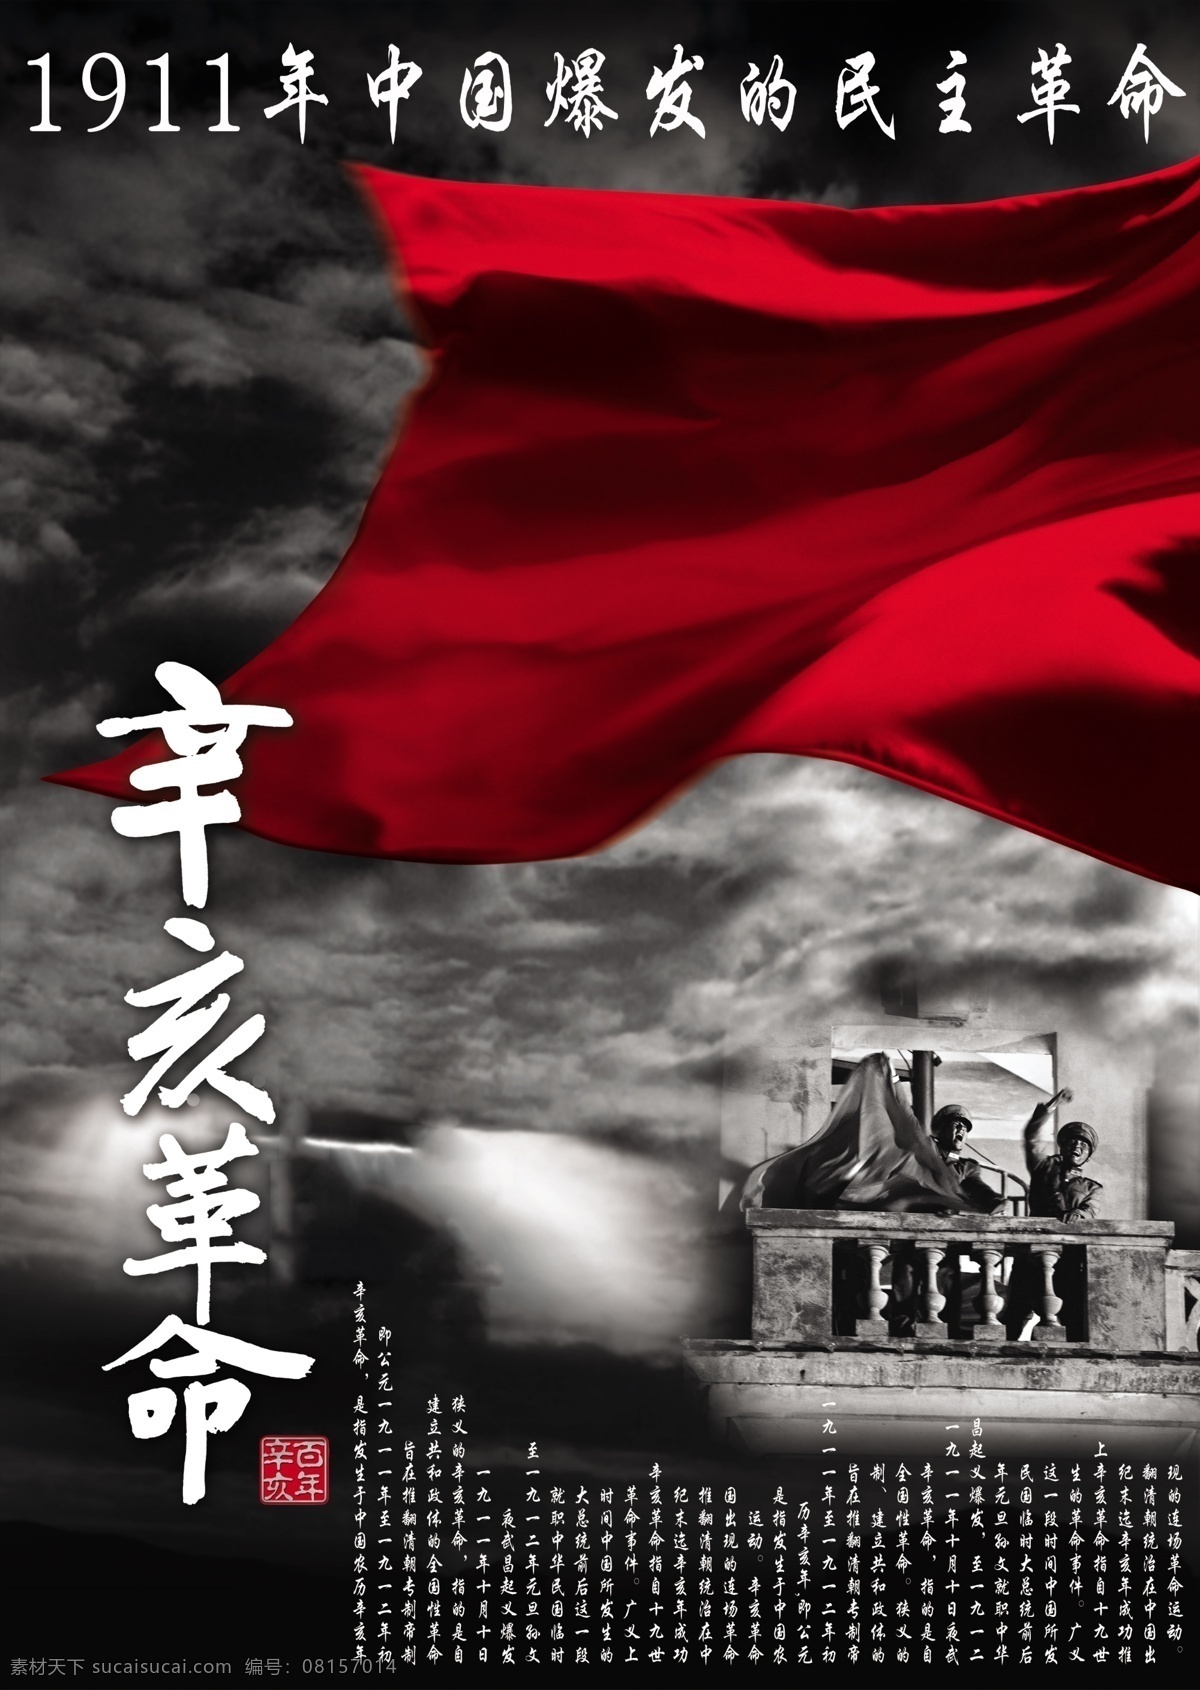 民主革命 辛亥革命 纪念日 海报 矢量图